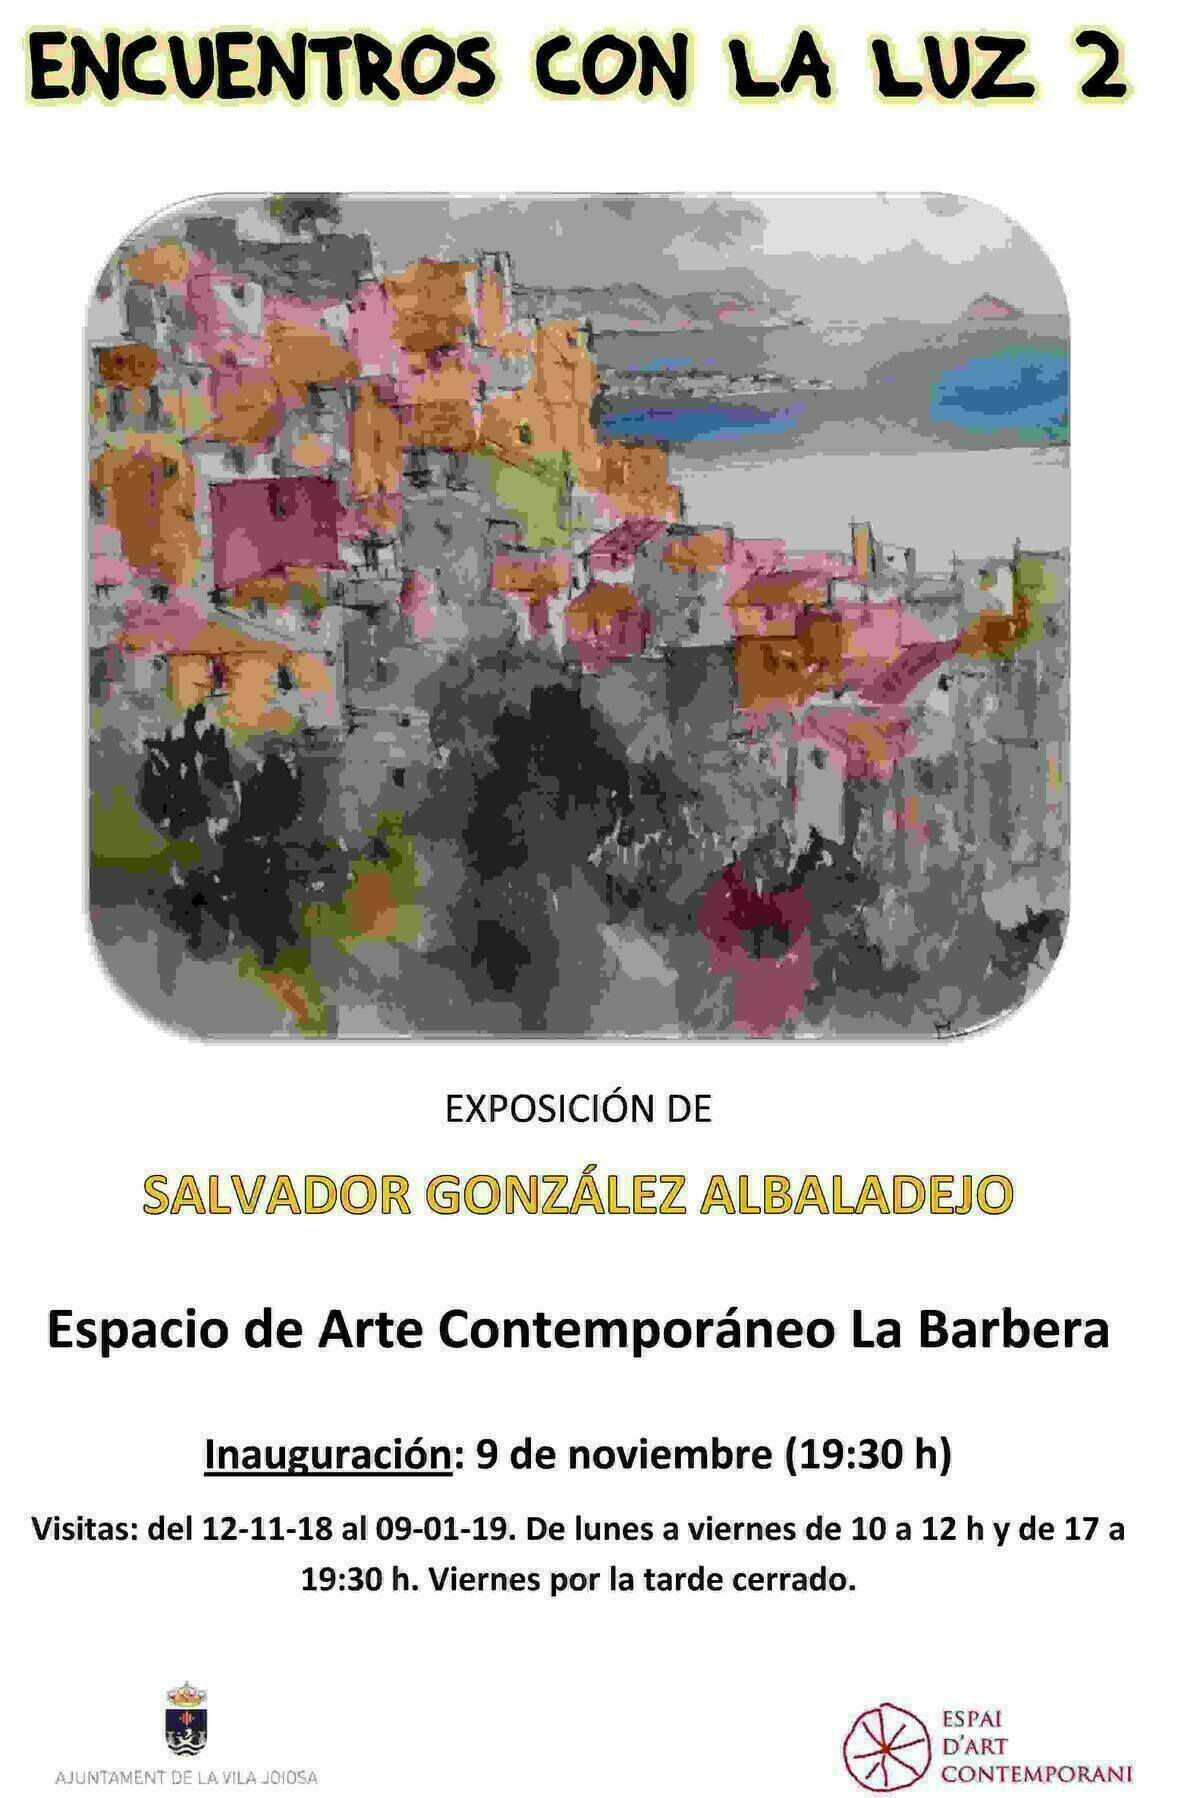 La Vila Joiosa expone las pinturas de Salvador González Albaladejo